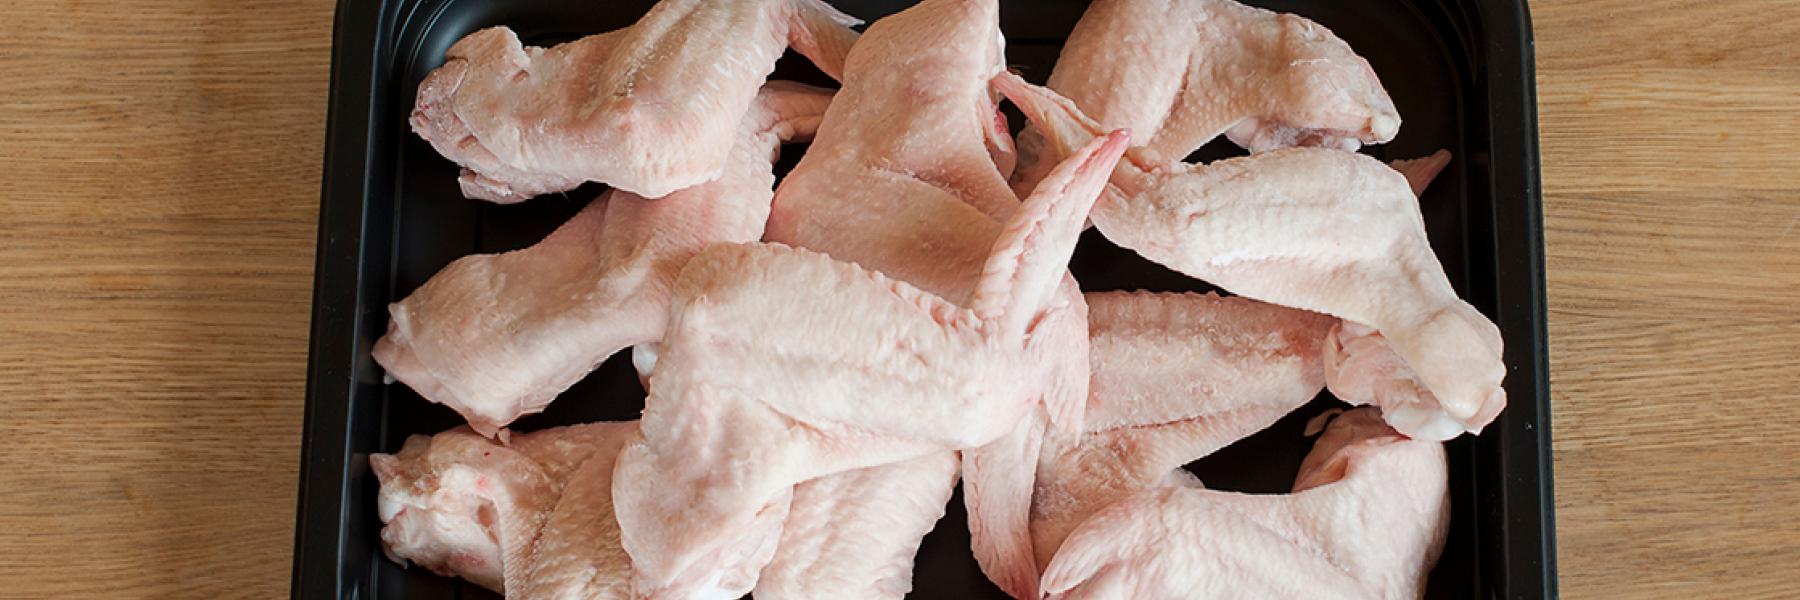 هل يمكن إعادة تجميد الدجاج بعد إذابة الثلج عنه؟